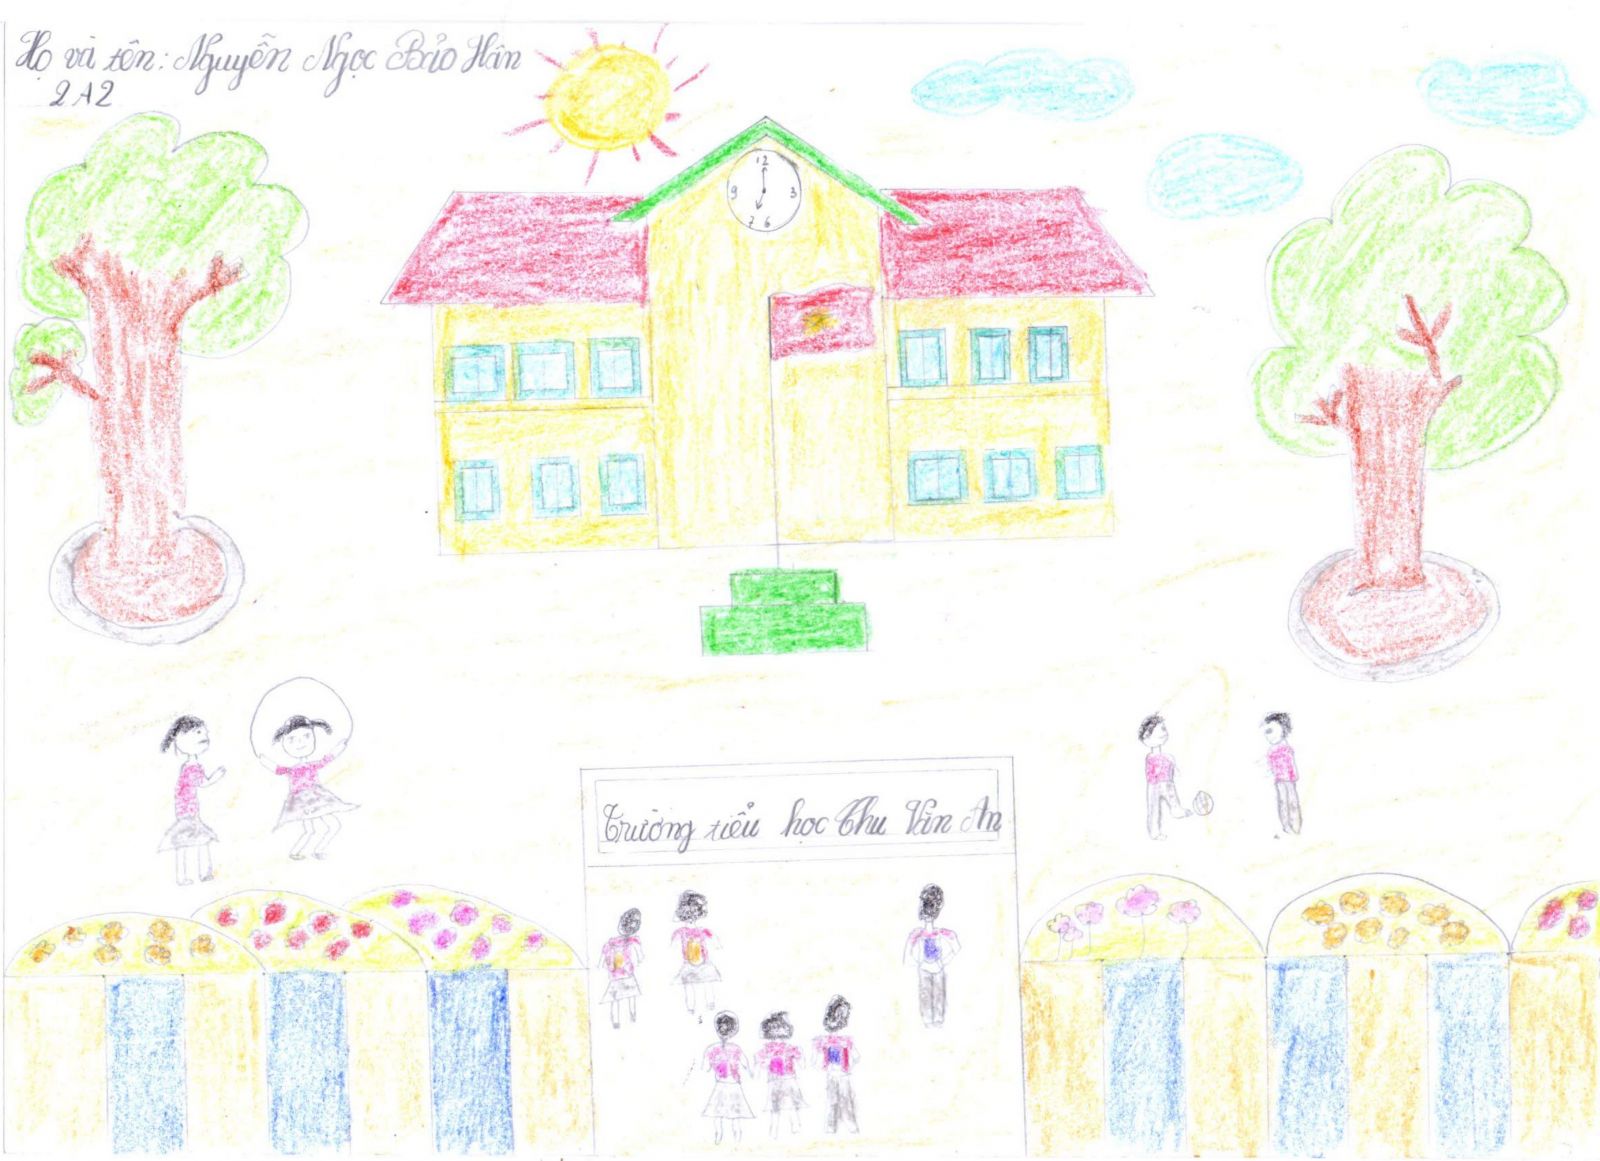 Hướng dẫn cách Vẽ trường học hạnh phúc đơn giản 100 mẫu đẹp bé tham khảo